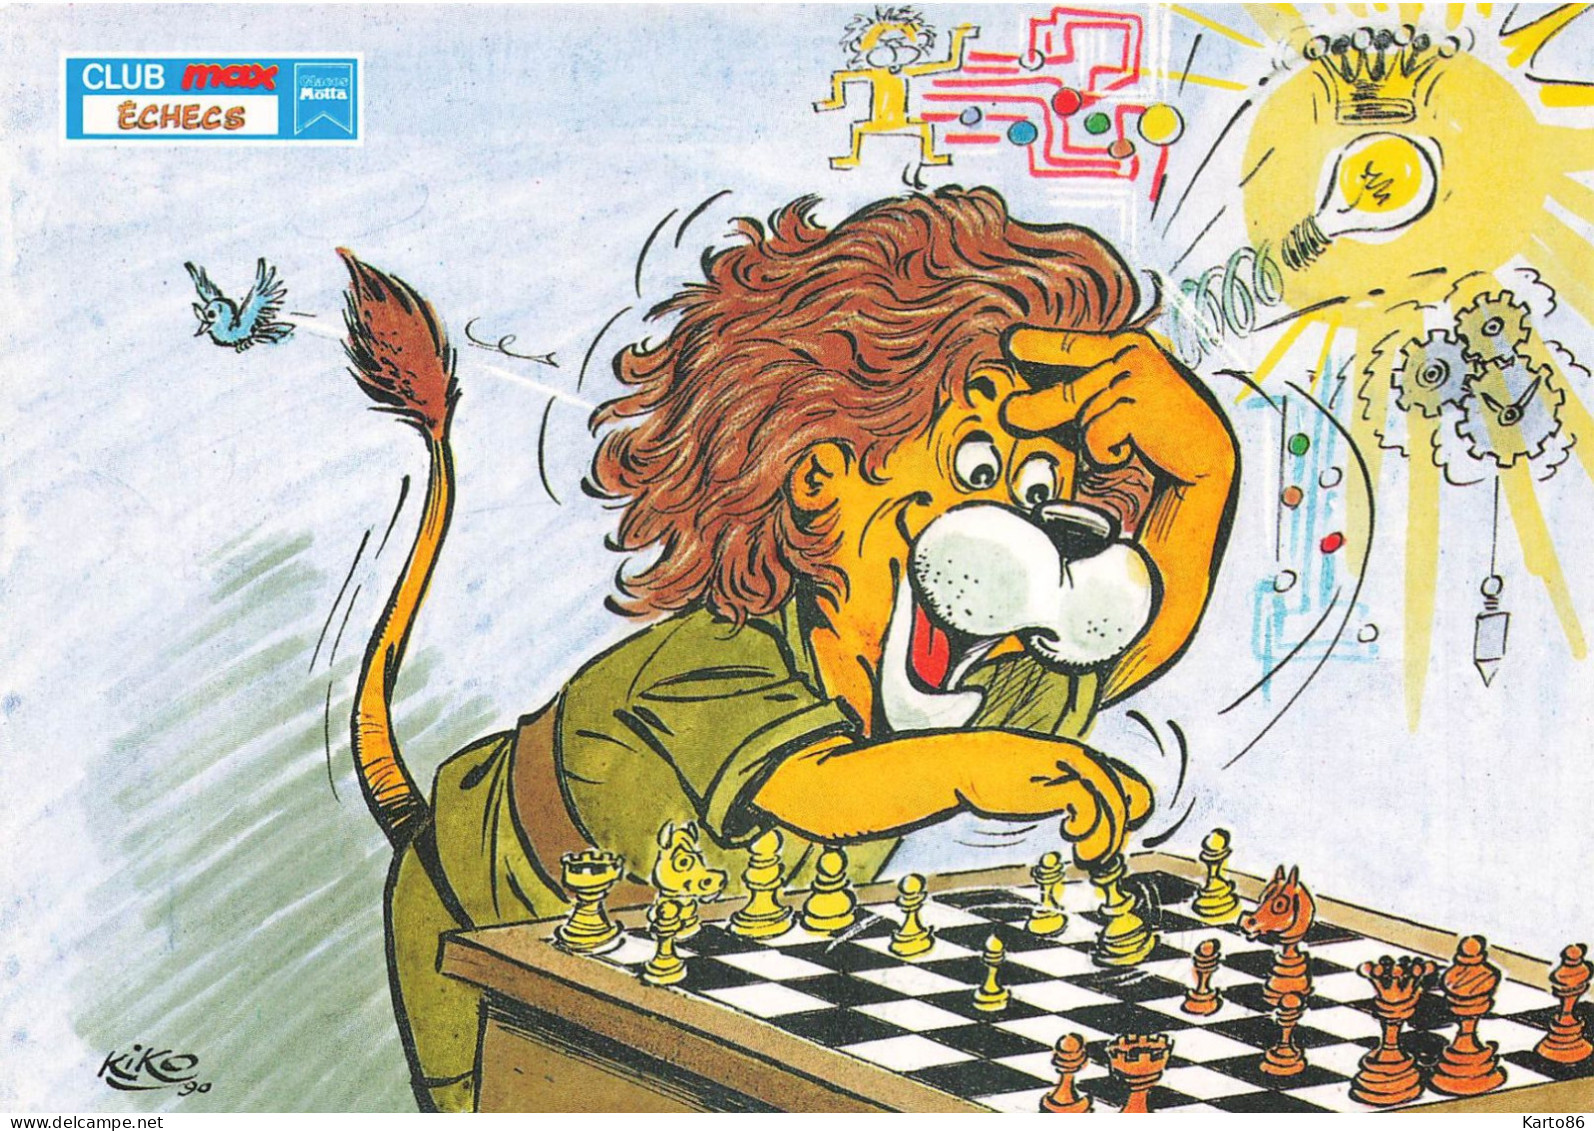 Les échecs , Chess * CPA Illustrateur KIKO Kiko * Club Max ECHECS * Lion Humanisé * Jeu Jeux Game * 1990 - Chess